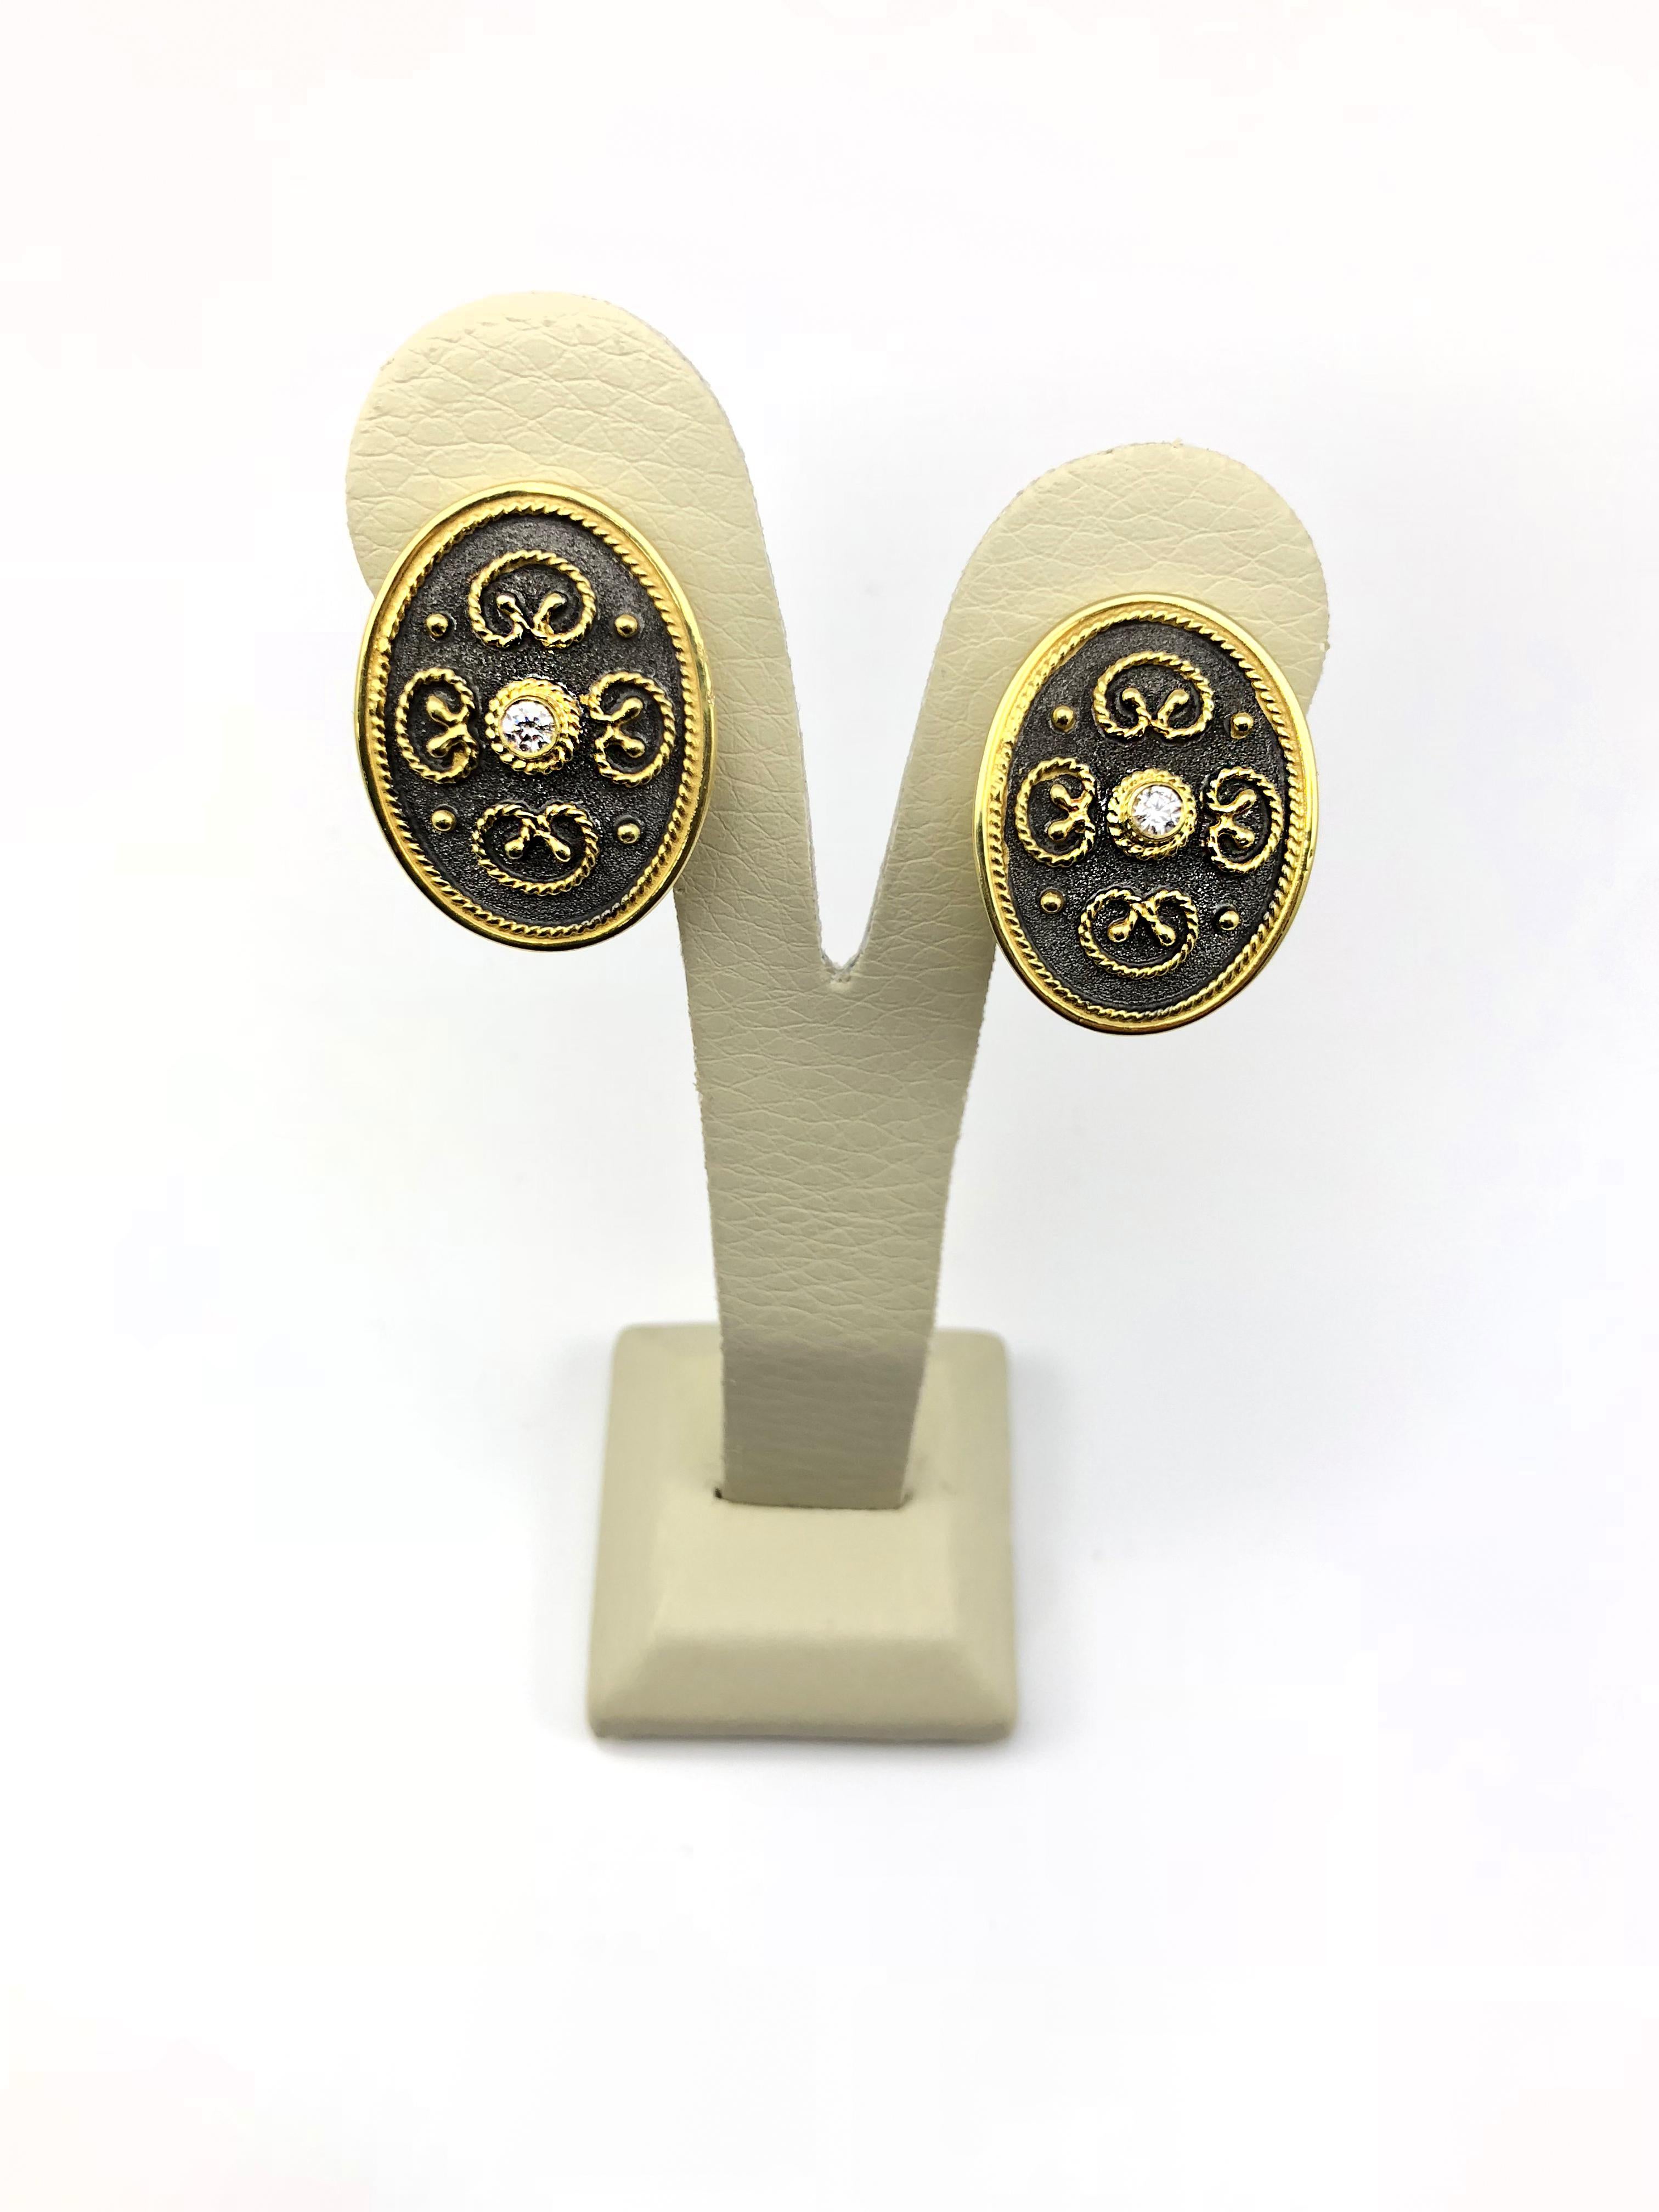 Die Designer-Ohrringe von S.Georgios sind aus massivem 18-karätigem Gelbgold handgefertigt und werden nach Maß angefertigt. Die atemberaubenden Ohrringe sind mikroskopisch klein mit Granulationsperlen und Drähten verziert. Granulierte Details